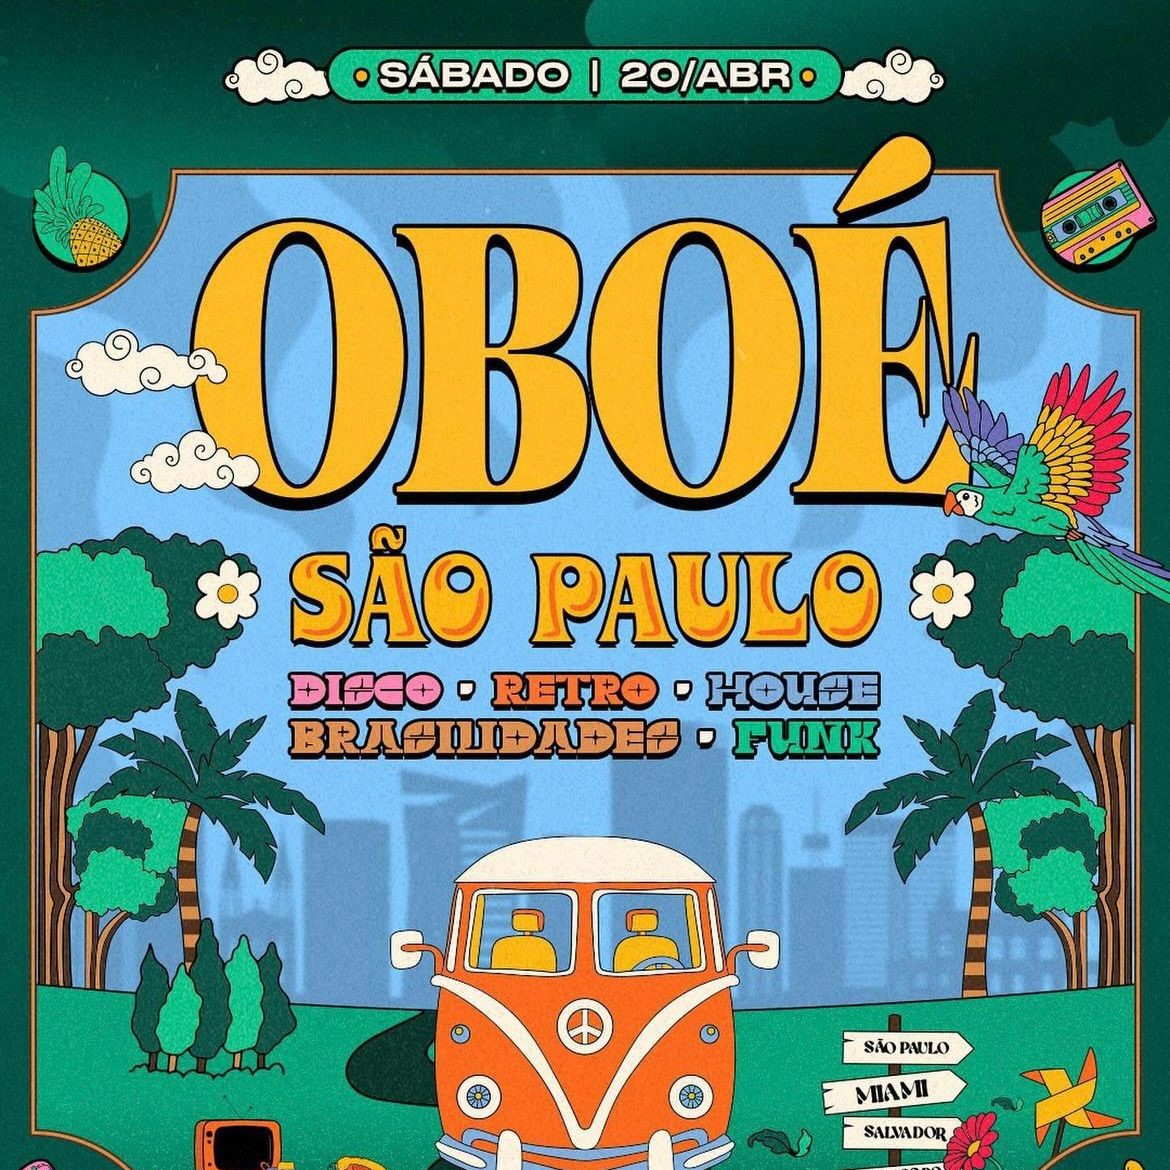 Festa Oboé | São Paulo